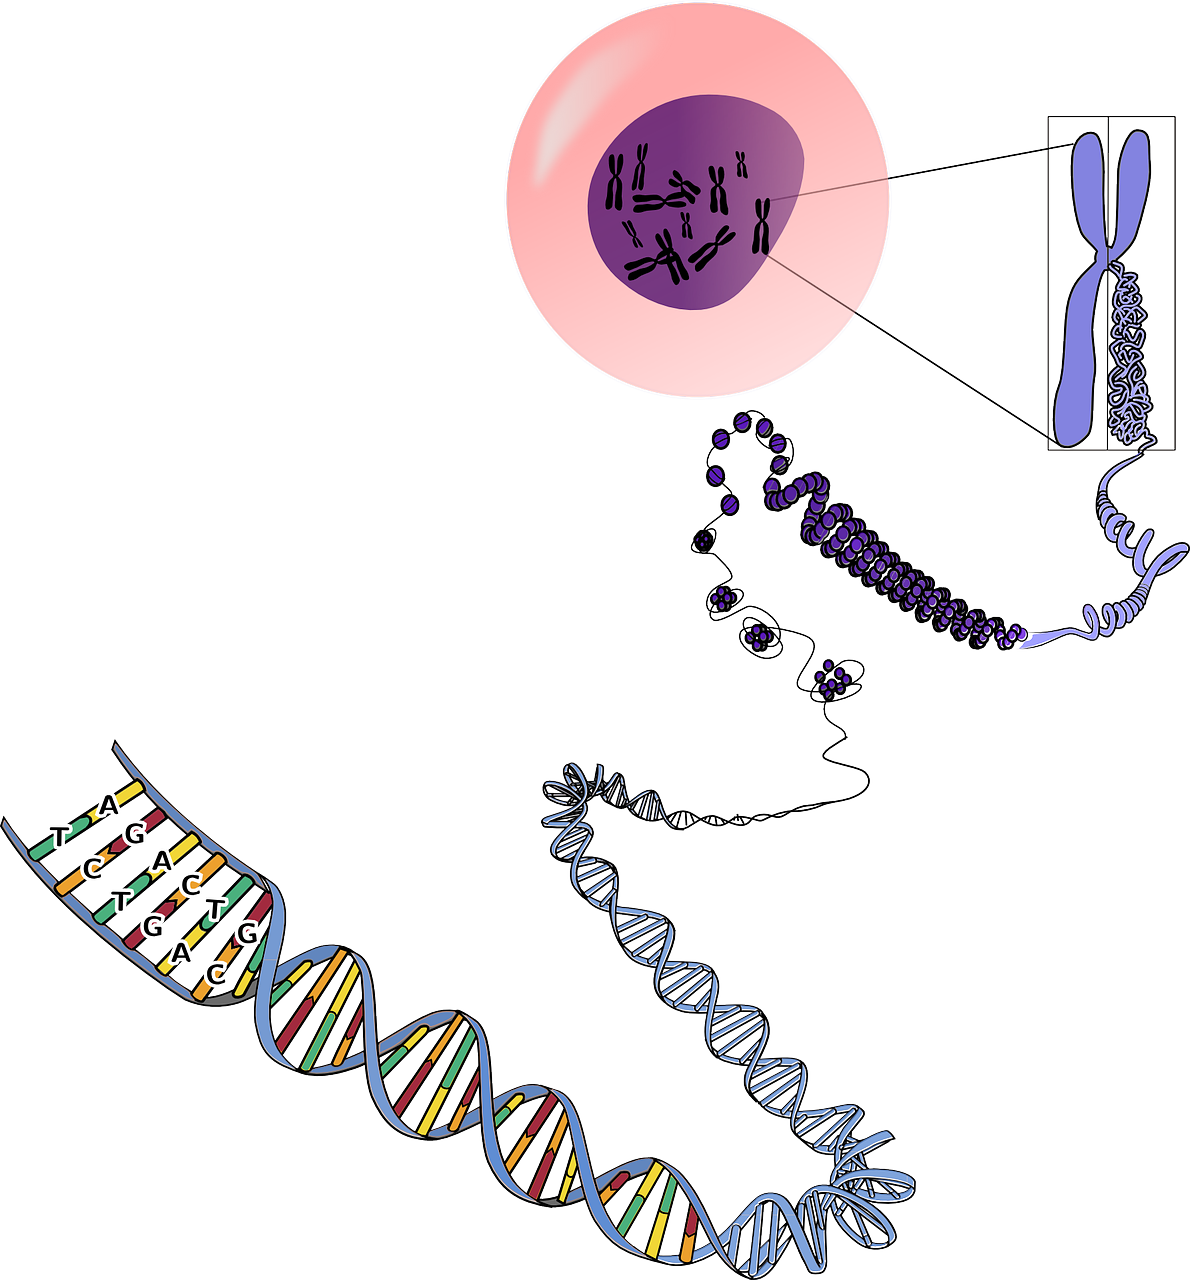 Consecuencias genéticas que un cromosoma 21 tiene